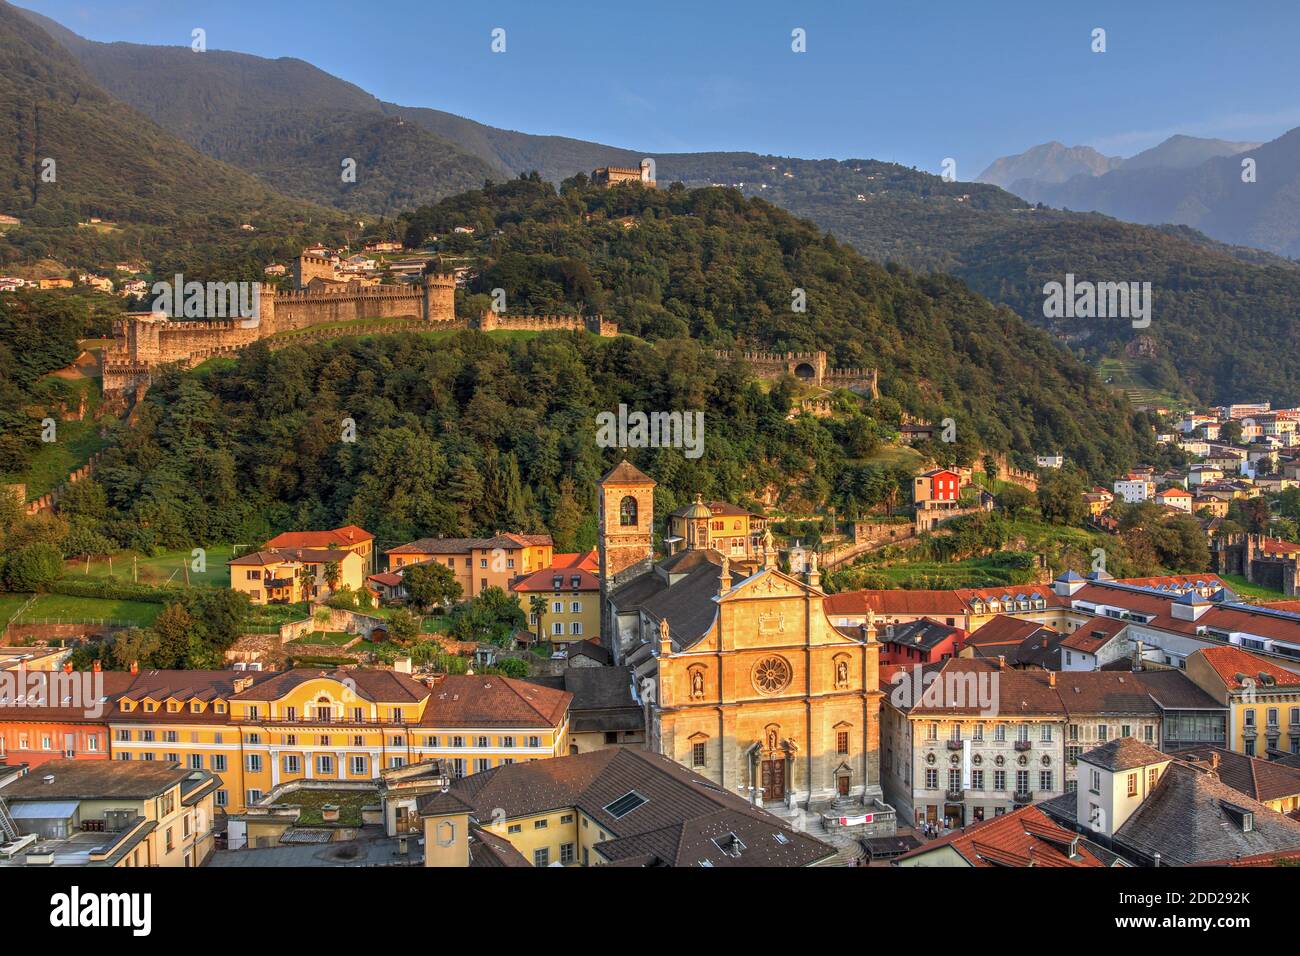 Veduta aerea durante l'ora di volo della capitale del Cantone Ticino in Svizzera - Bellinzona, con due castelli della città: Montebello e Sass Foto Stock